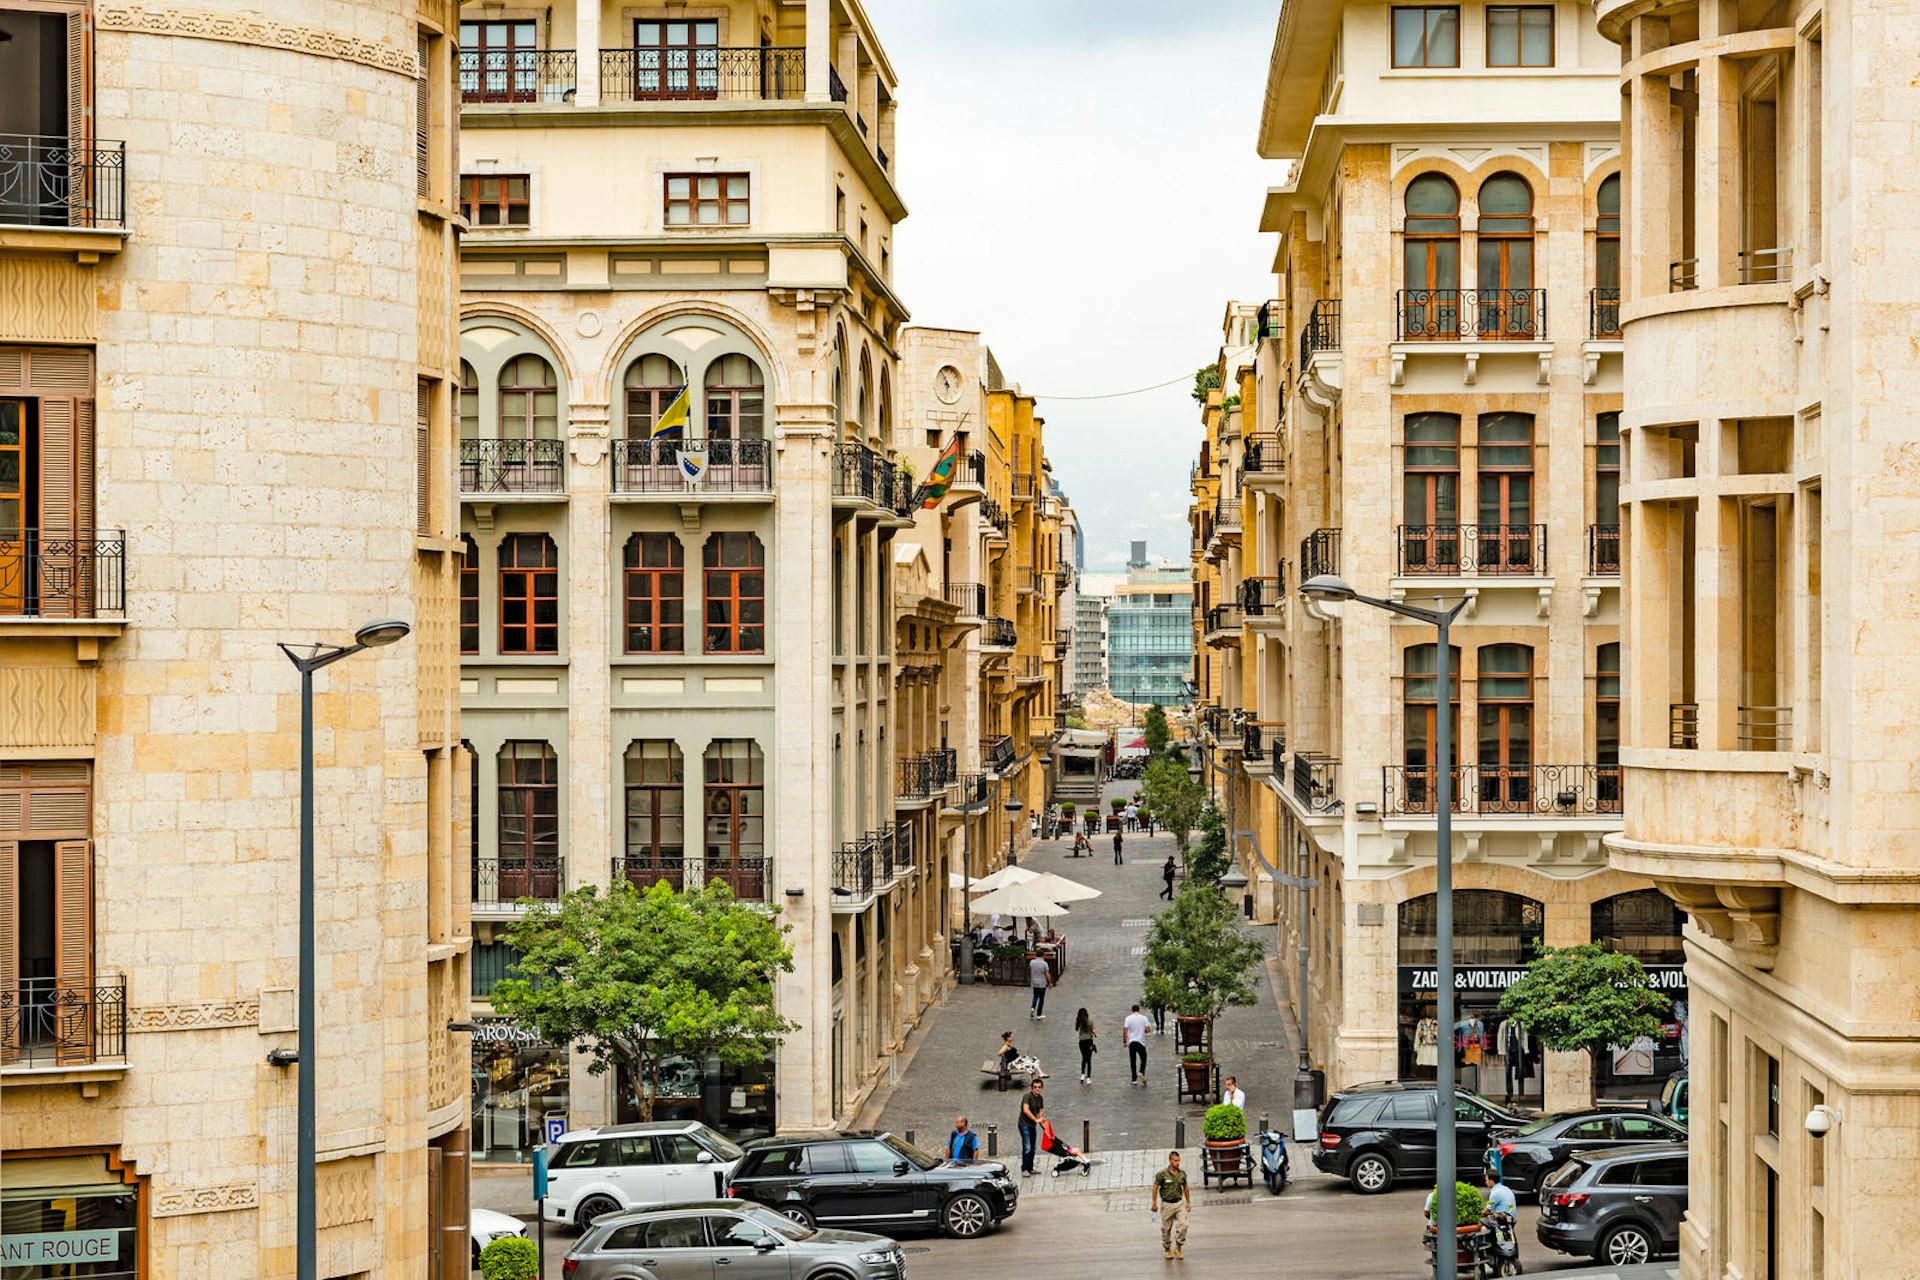 Beirut City at Beirut Souks in Beirut, Lebanon. Image by Richard Yoshida / Shutterstock